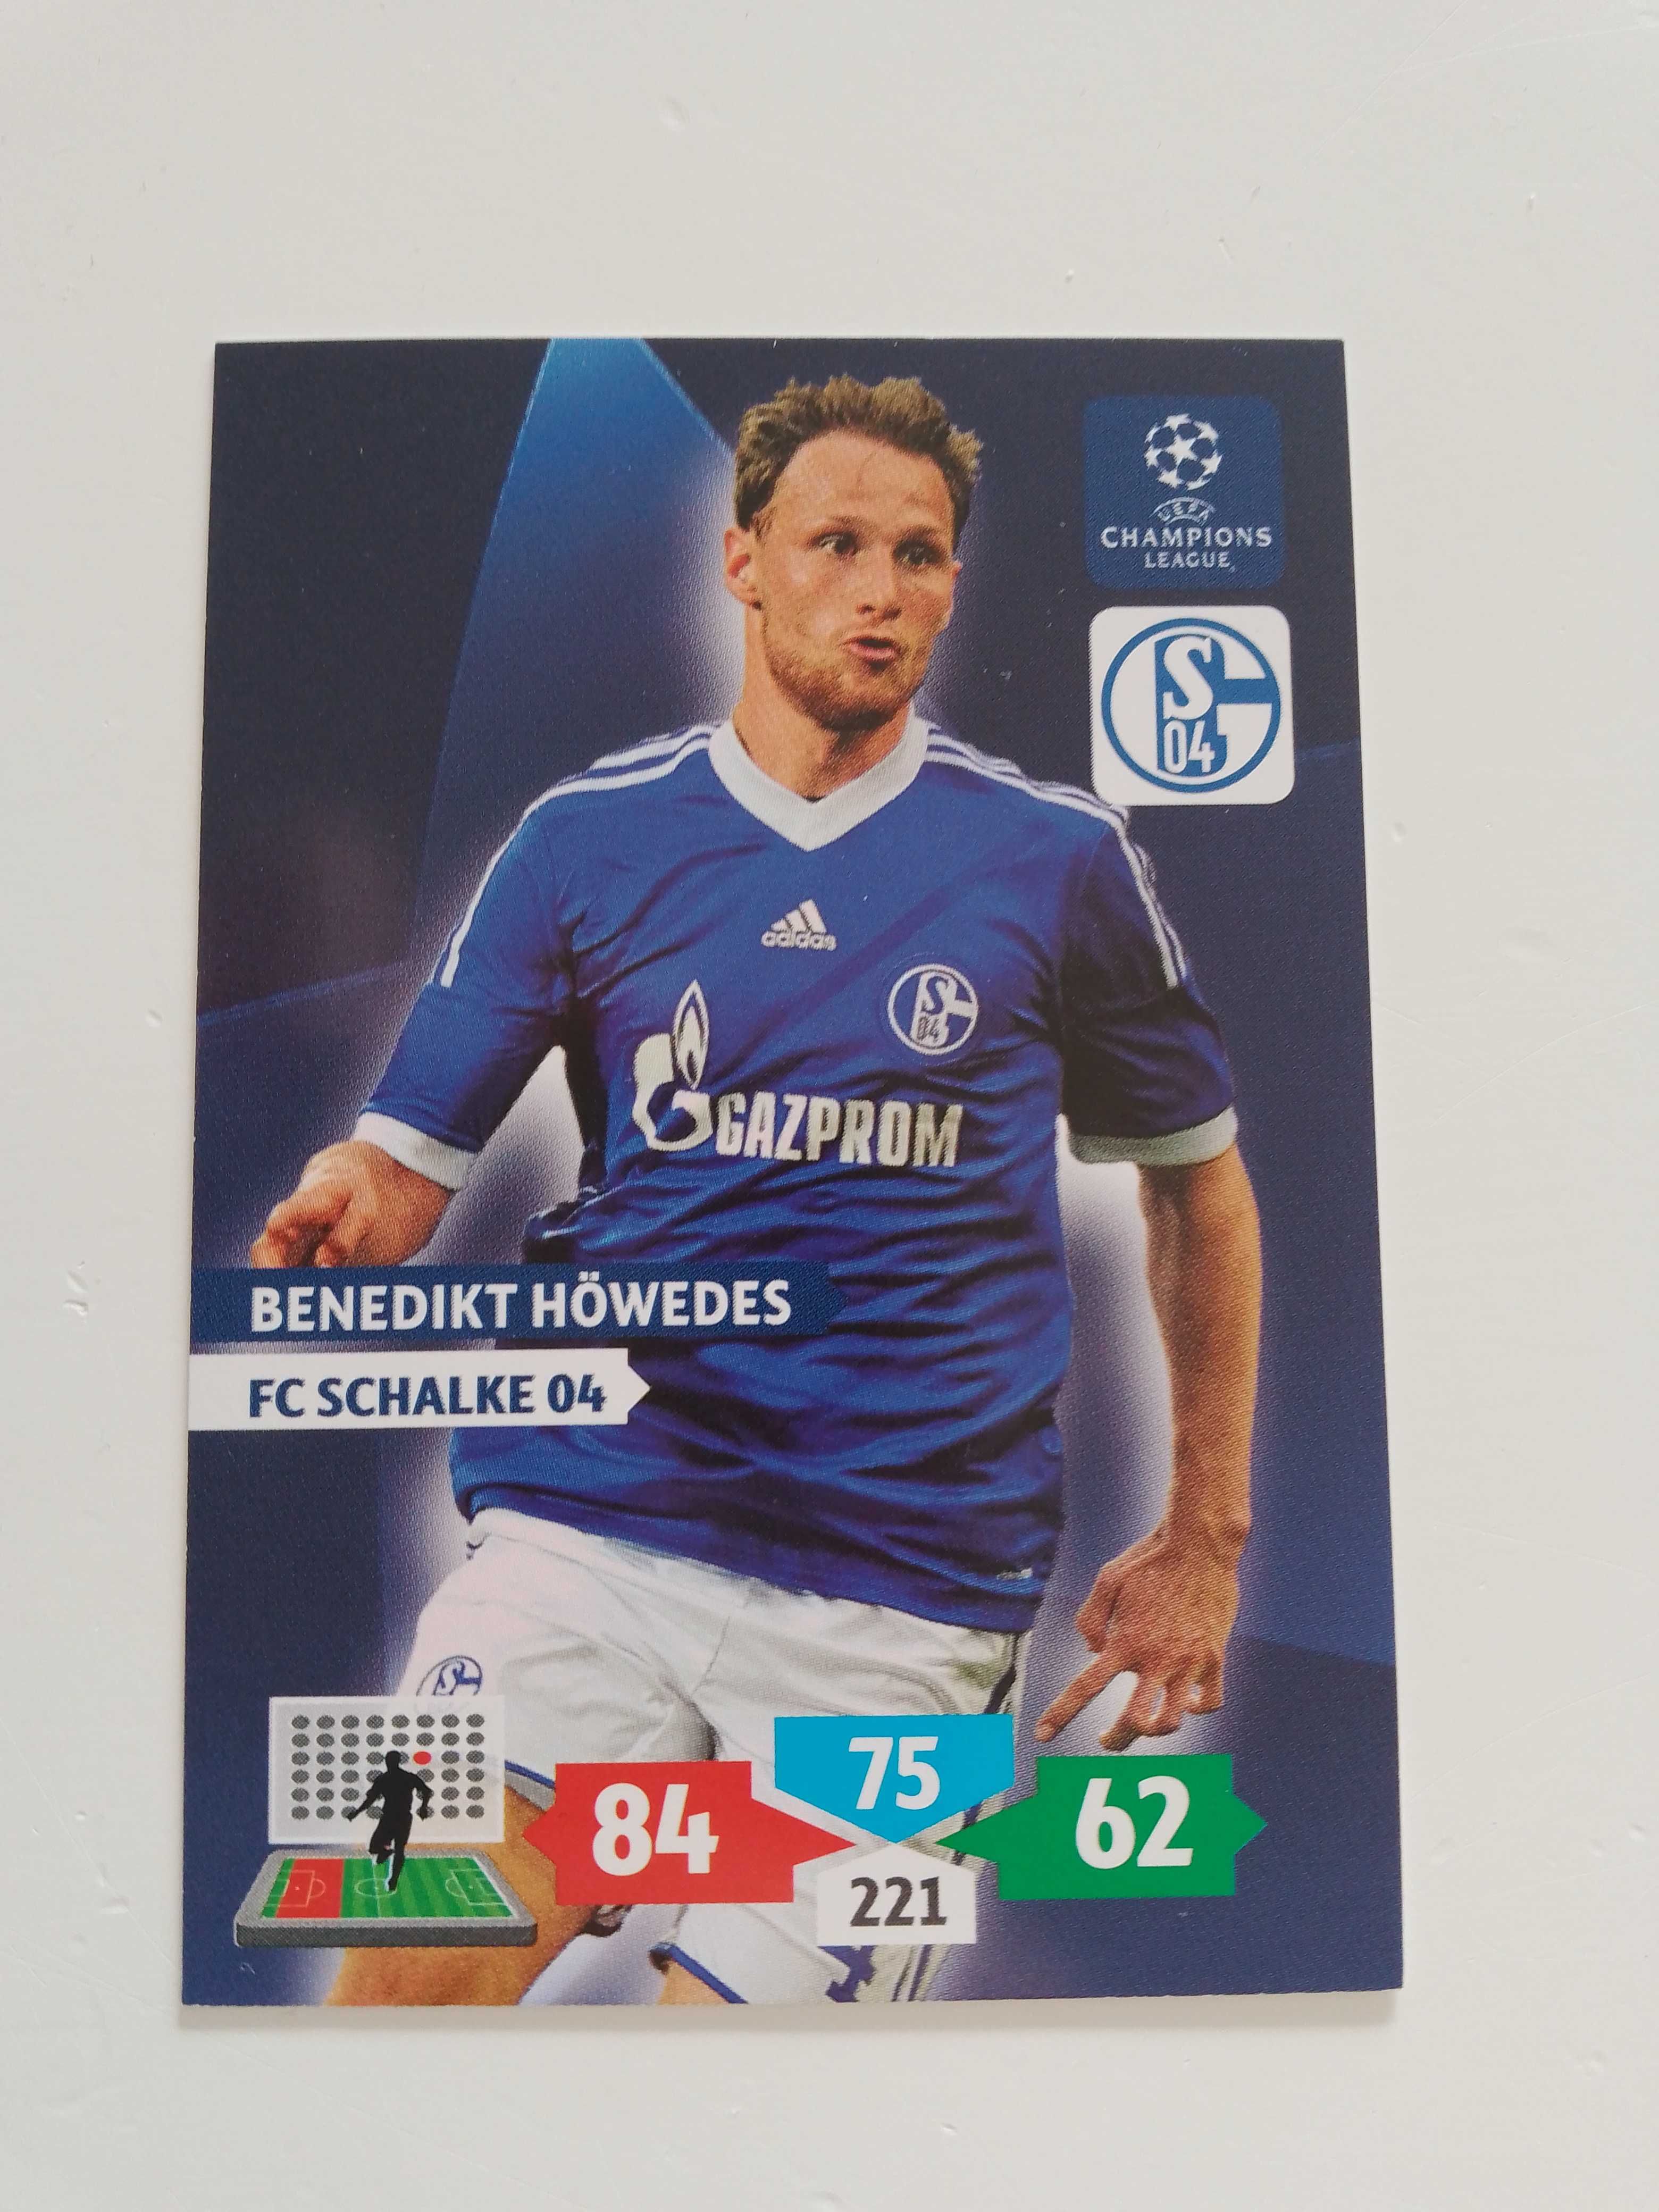 Benedikt Höwedes (Base card) FC Schalke 04 Champions League 2013/14